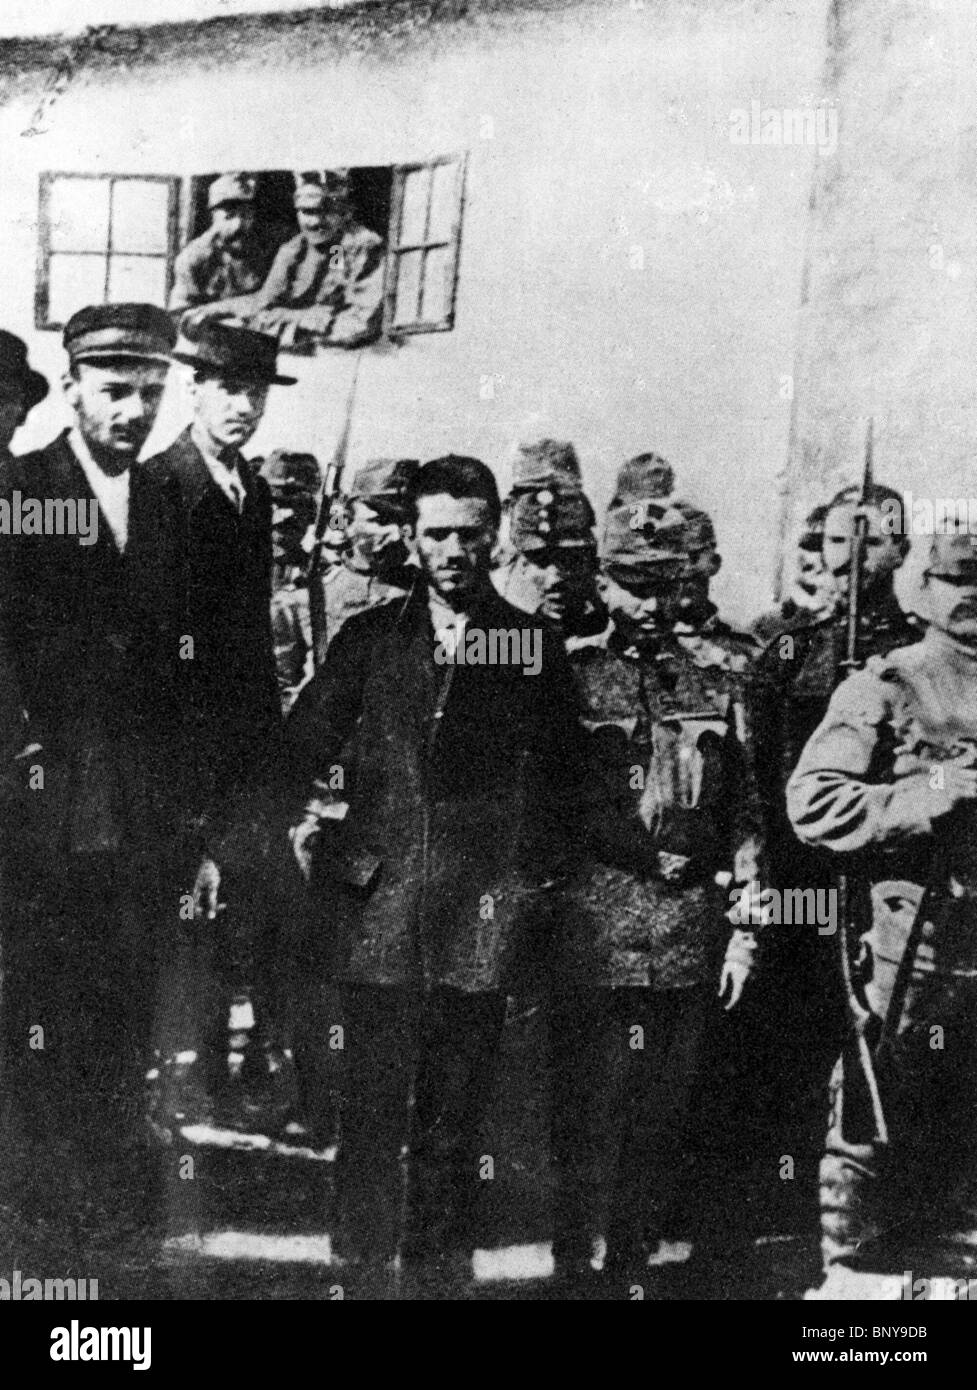 GAVRILO PRINCIP viene sfilato dai suoi rapitori austriaco dopo assassinare arciduca Franz Ferdinand, Sarajevo, Bosnia, 28 giugno 1914 Foto Stock